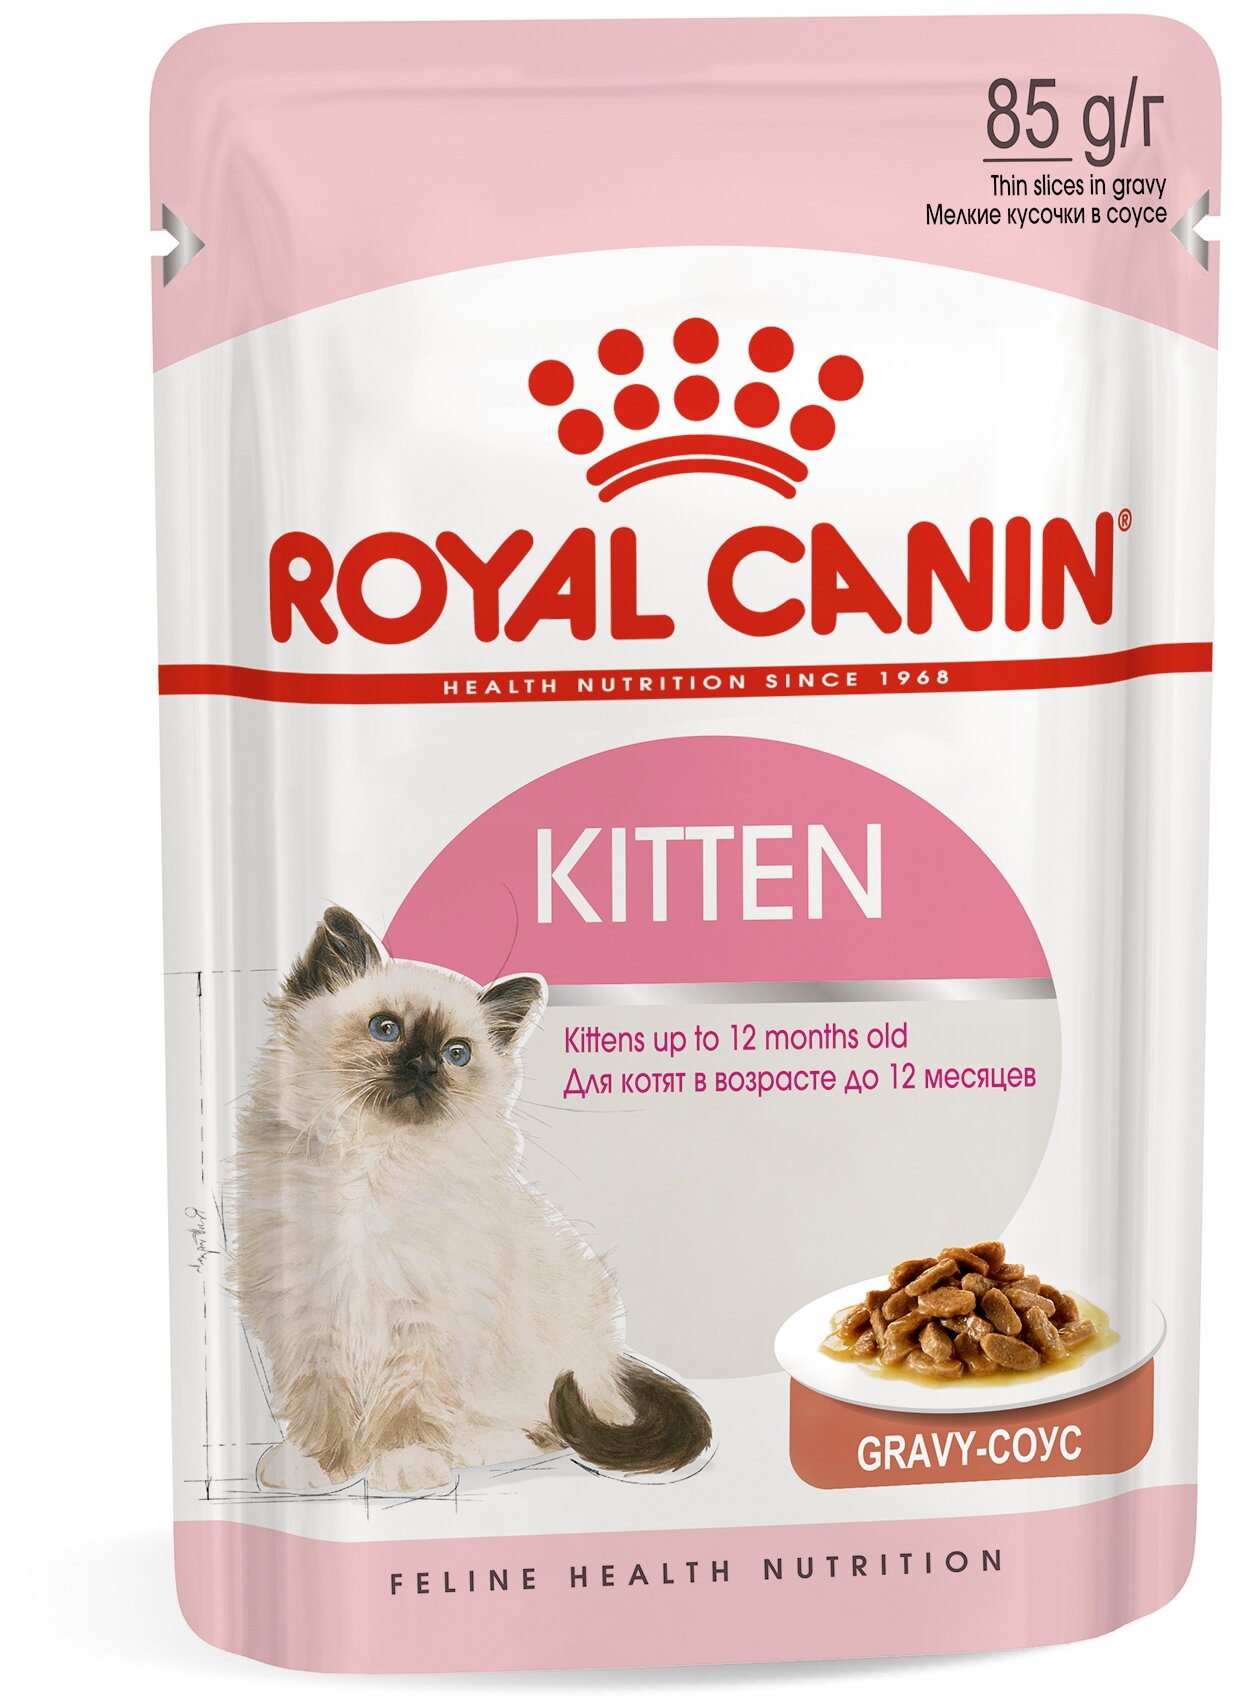     Royal Canin Kitten, 20 .  85  (  )